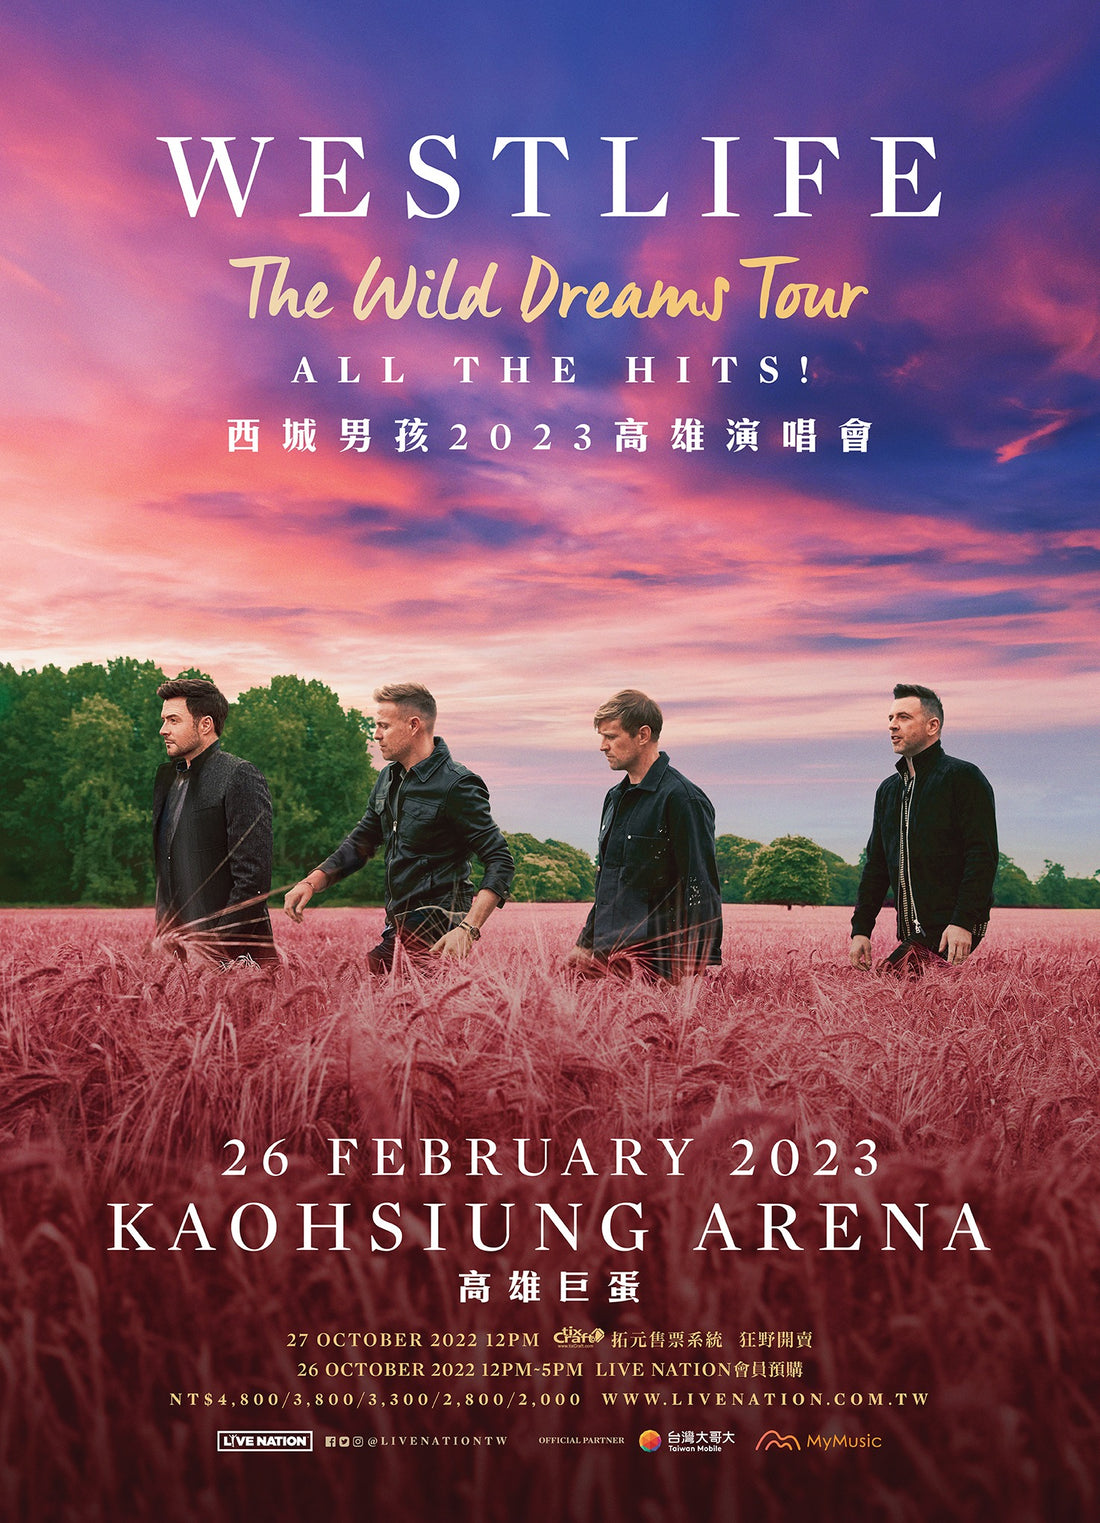 WESTLIFE THE WILD DREAMS TOUR 西城男孩2023高雄演唱會